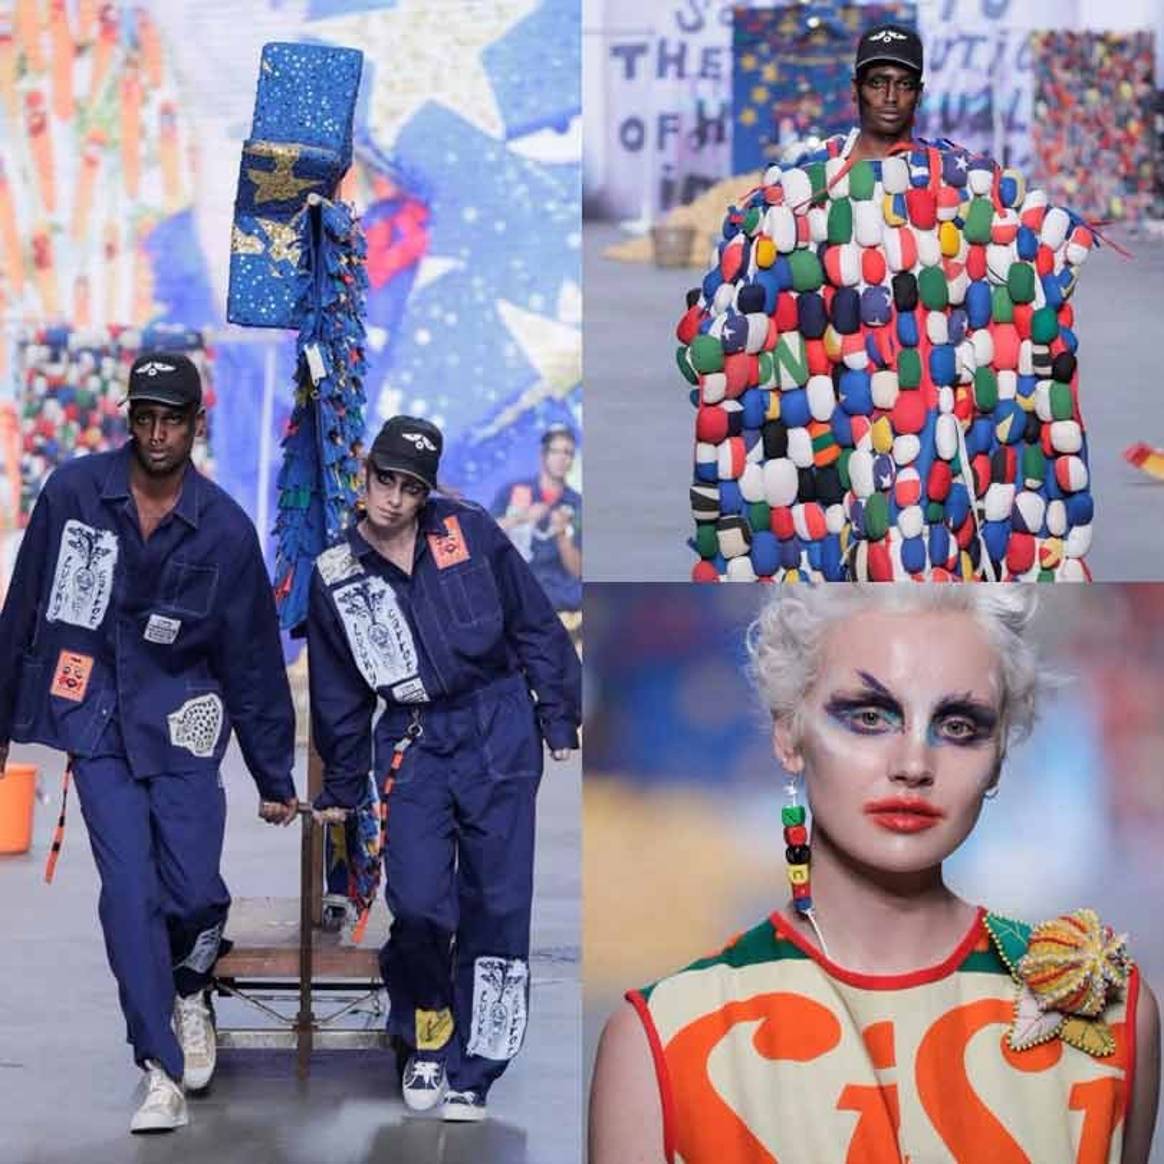 Amsterdam Fashion Week promoot hergebruik en recycling van kleding